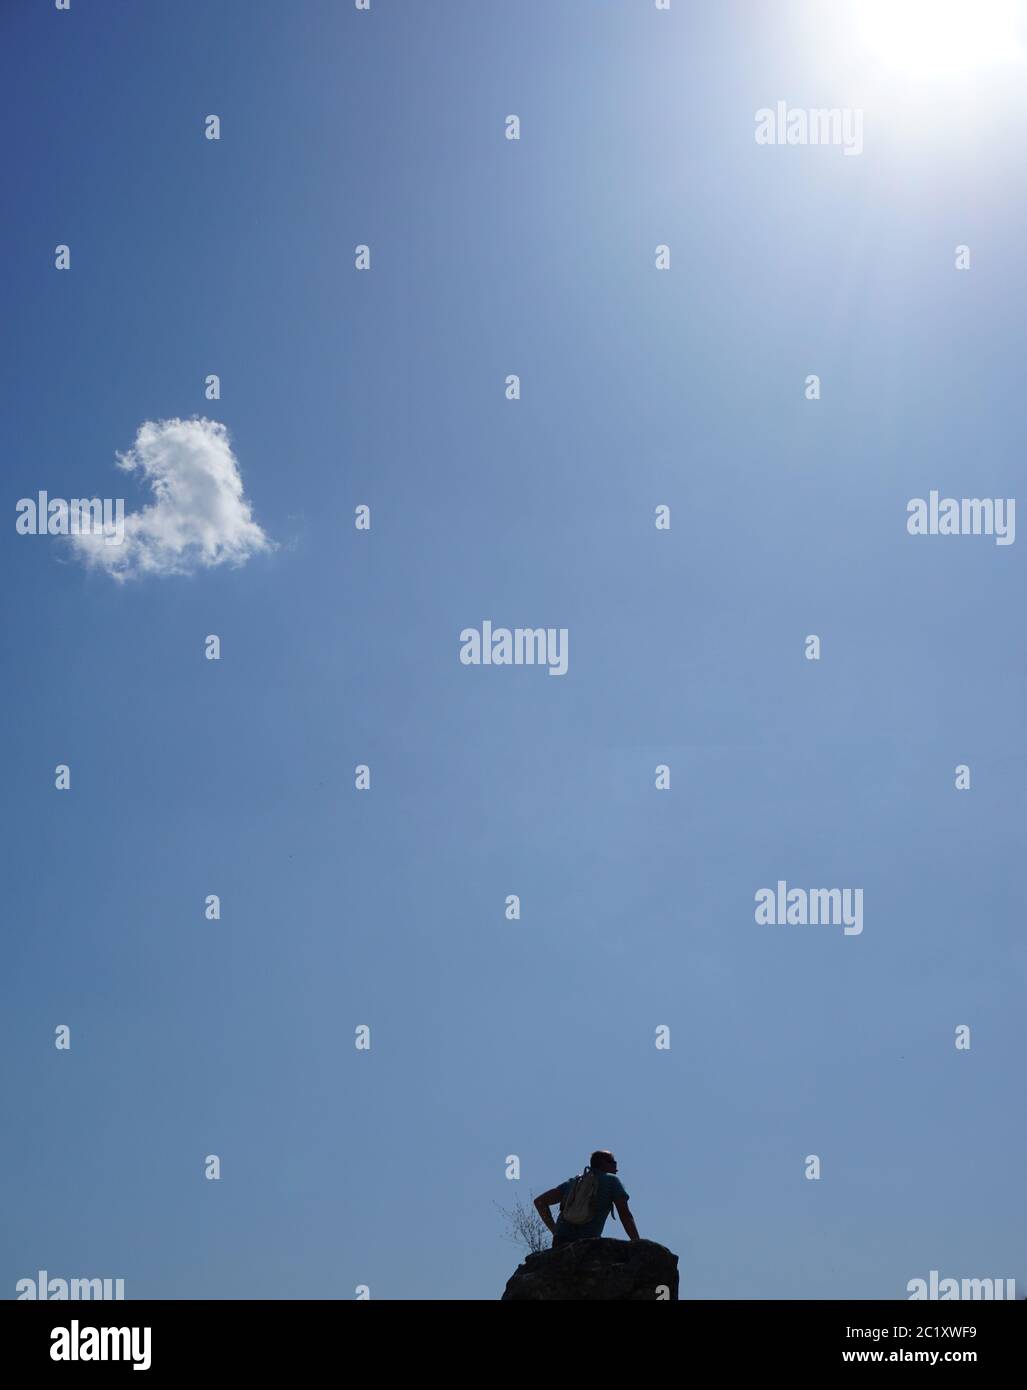 Un uomo riposa su una roccia, in una giornata estiva soleggiata. Il cielo è blu e ha una nuvola a forma di cuore. Foto Stock